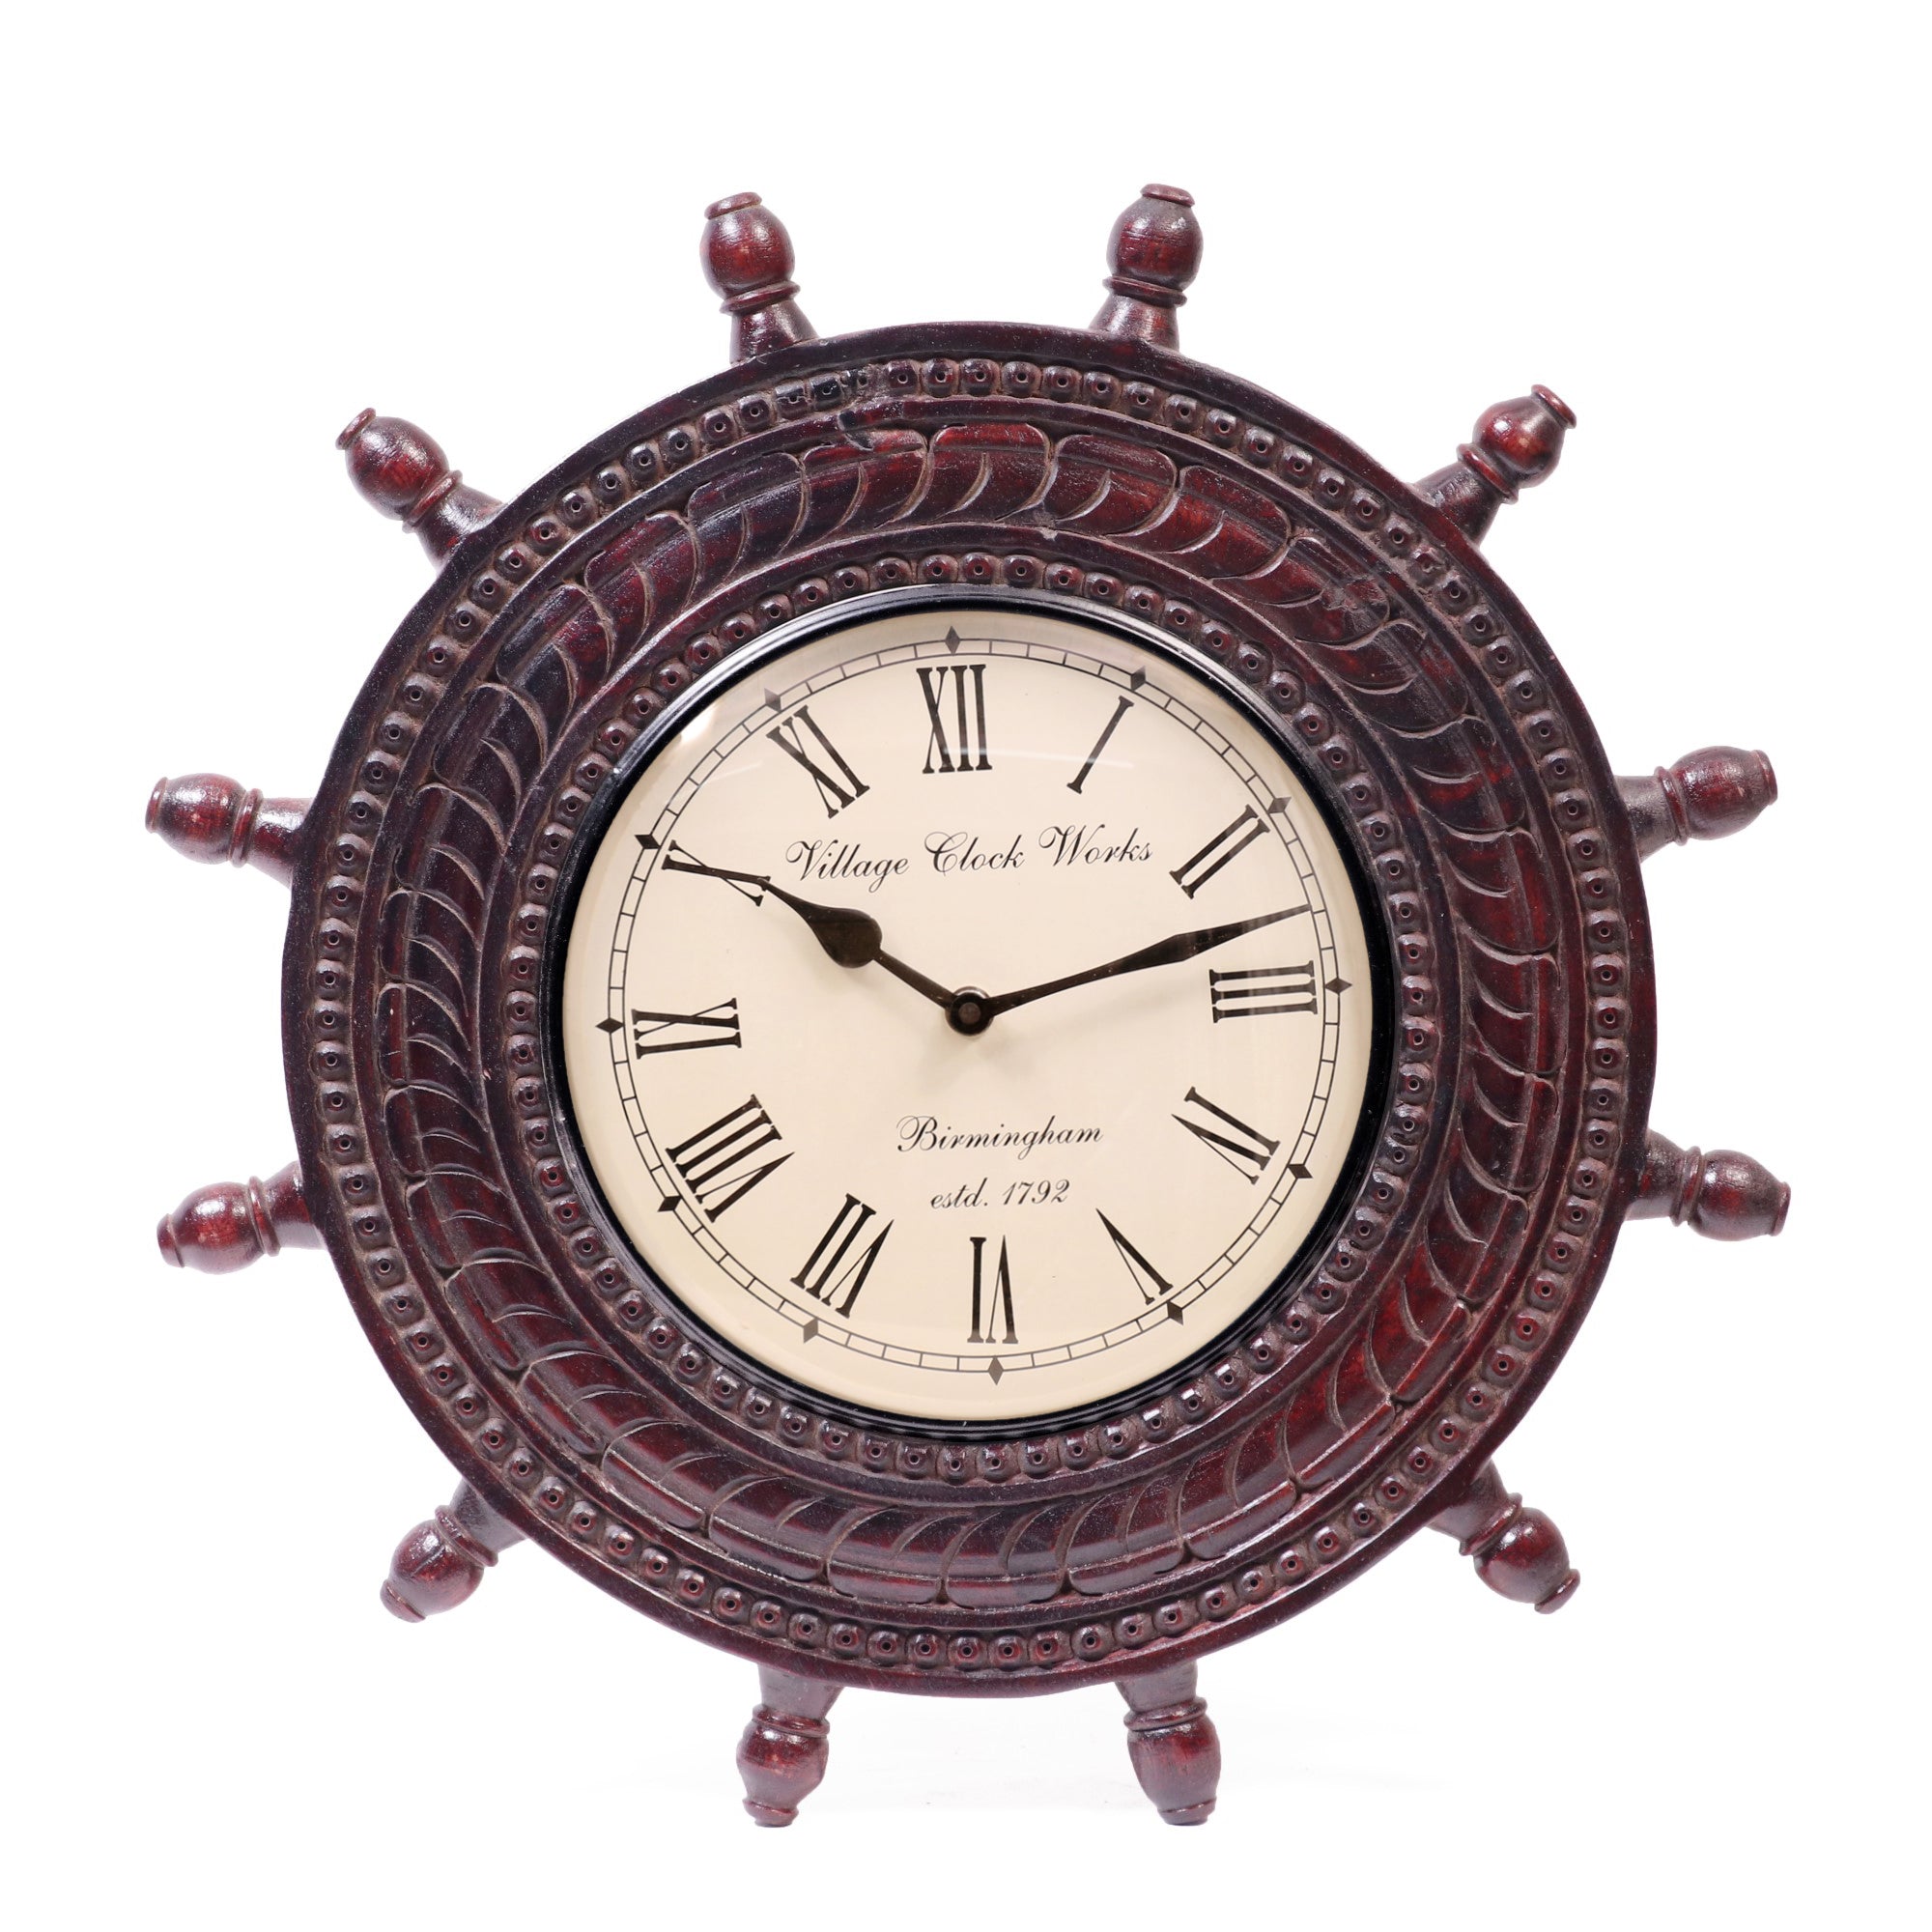 Shipwreck Wooden Clock Clock